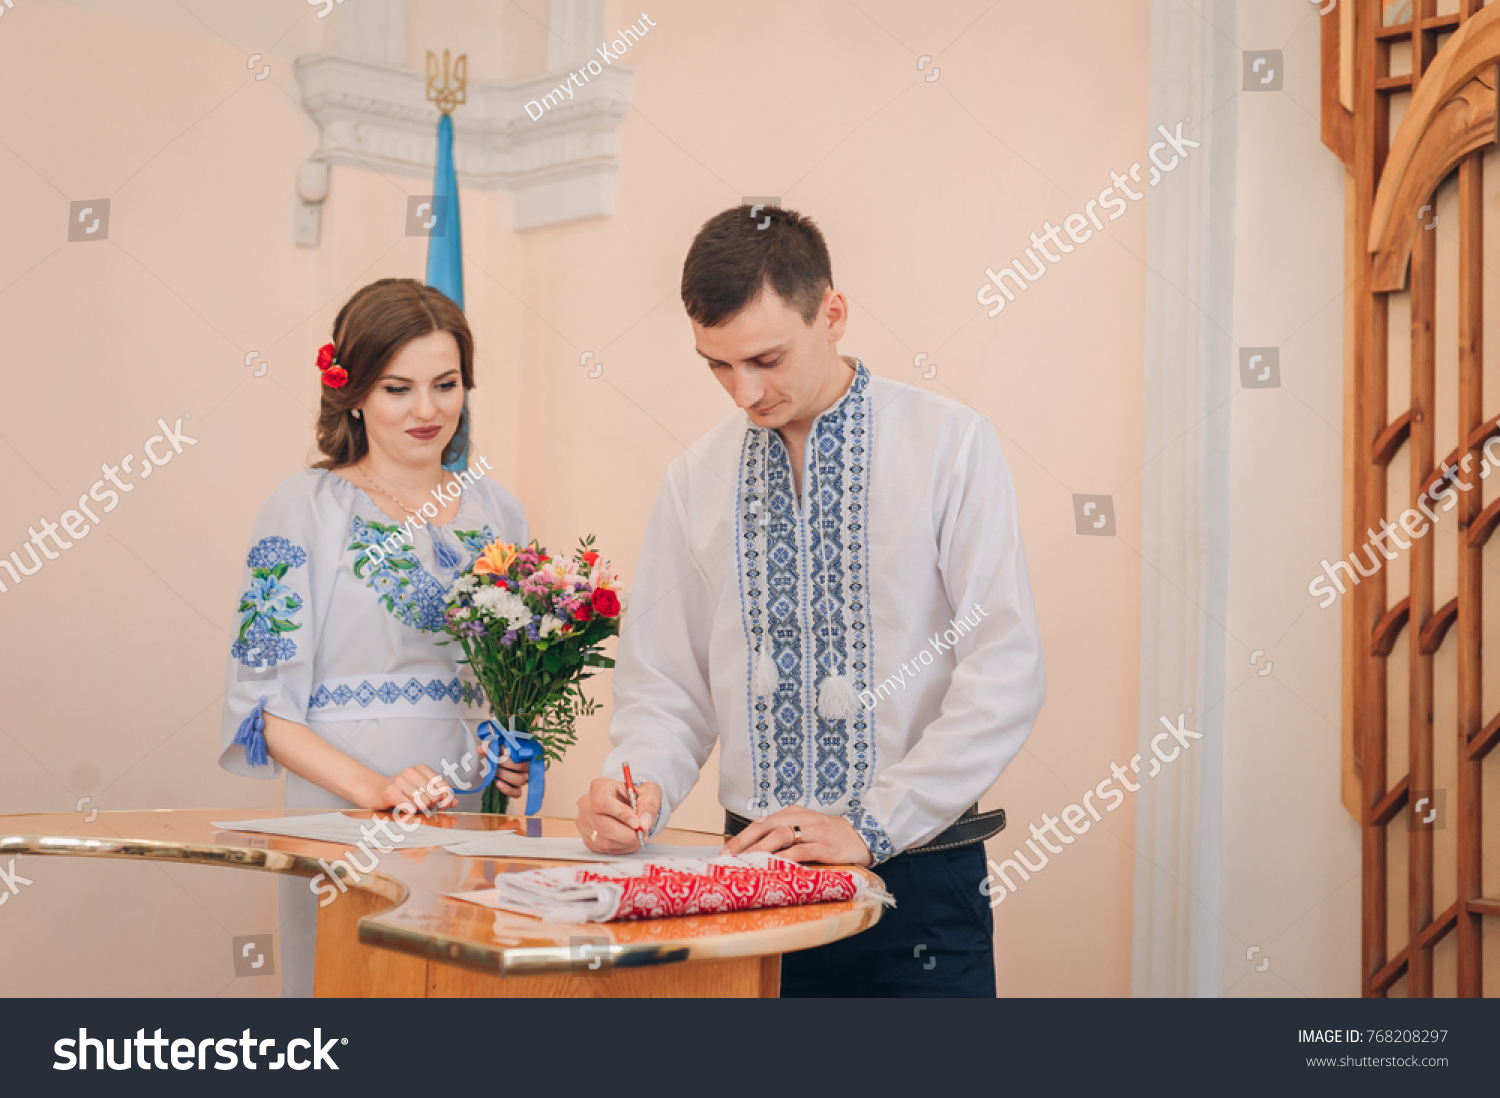 Знакомство Украина Брак